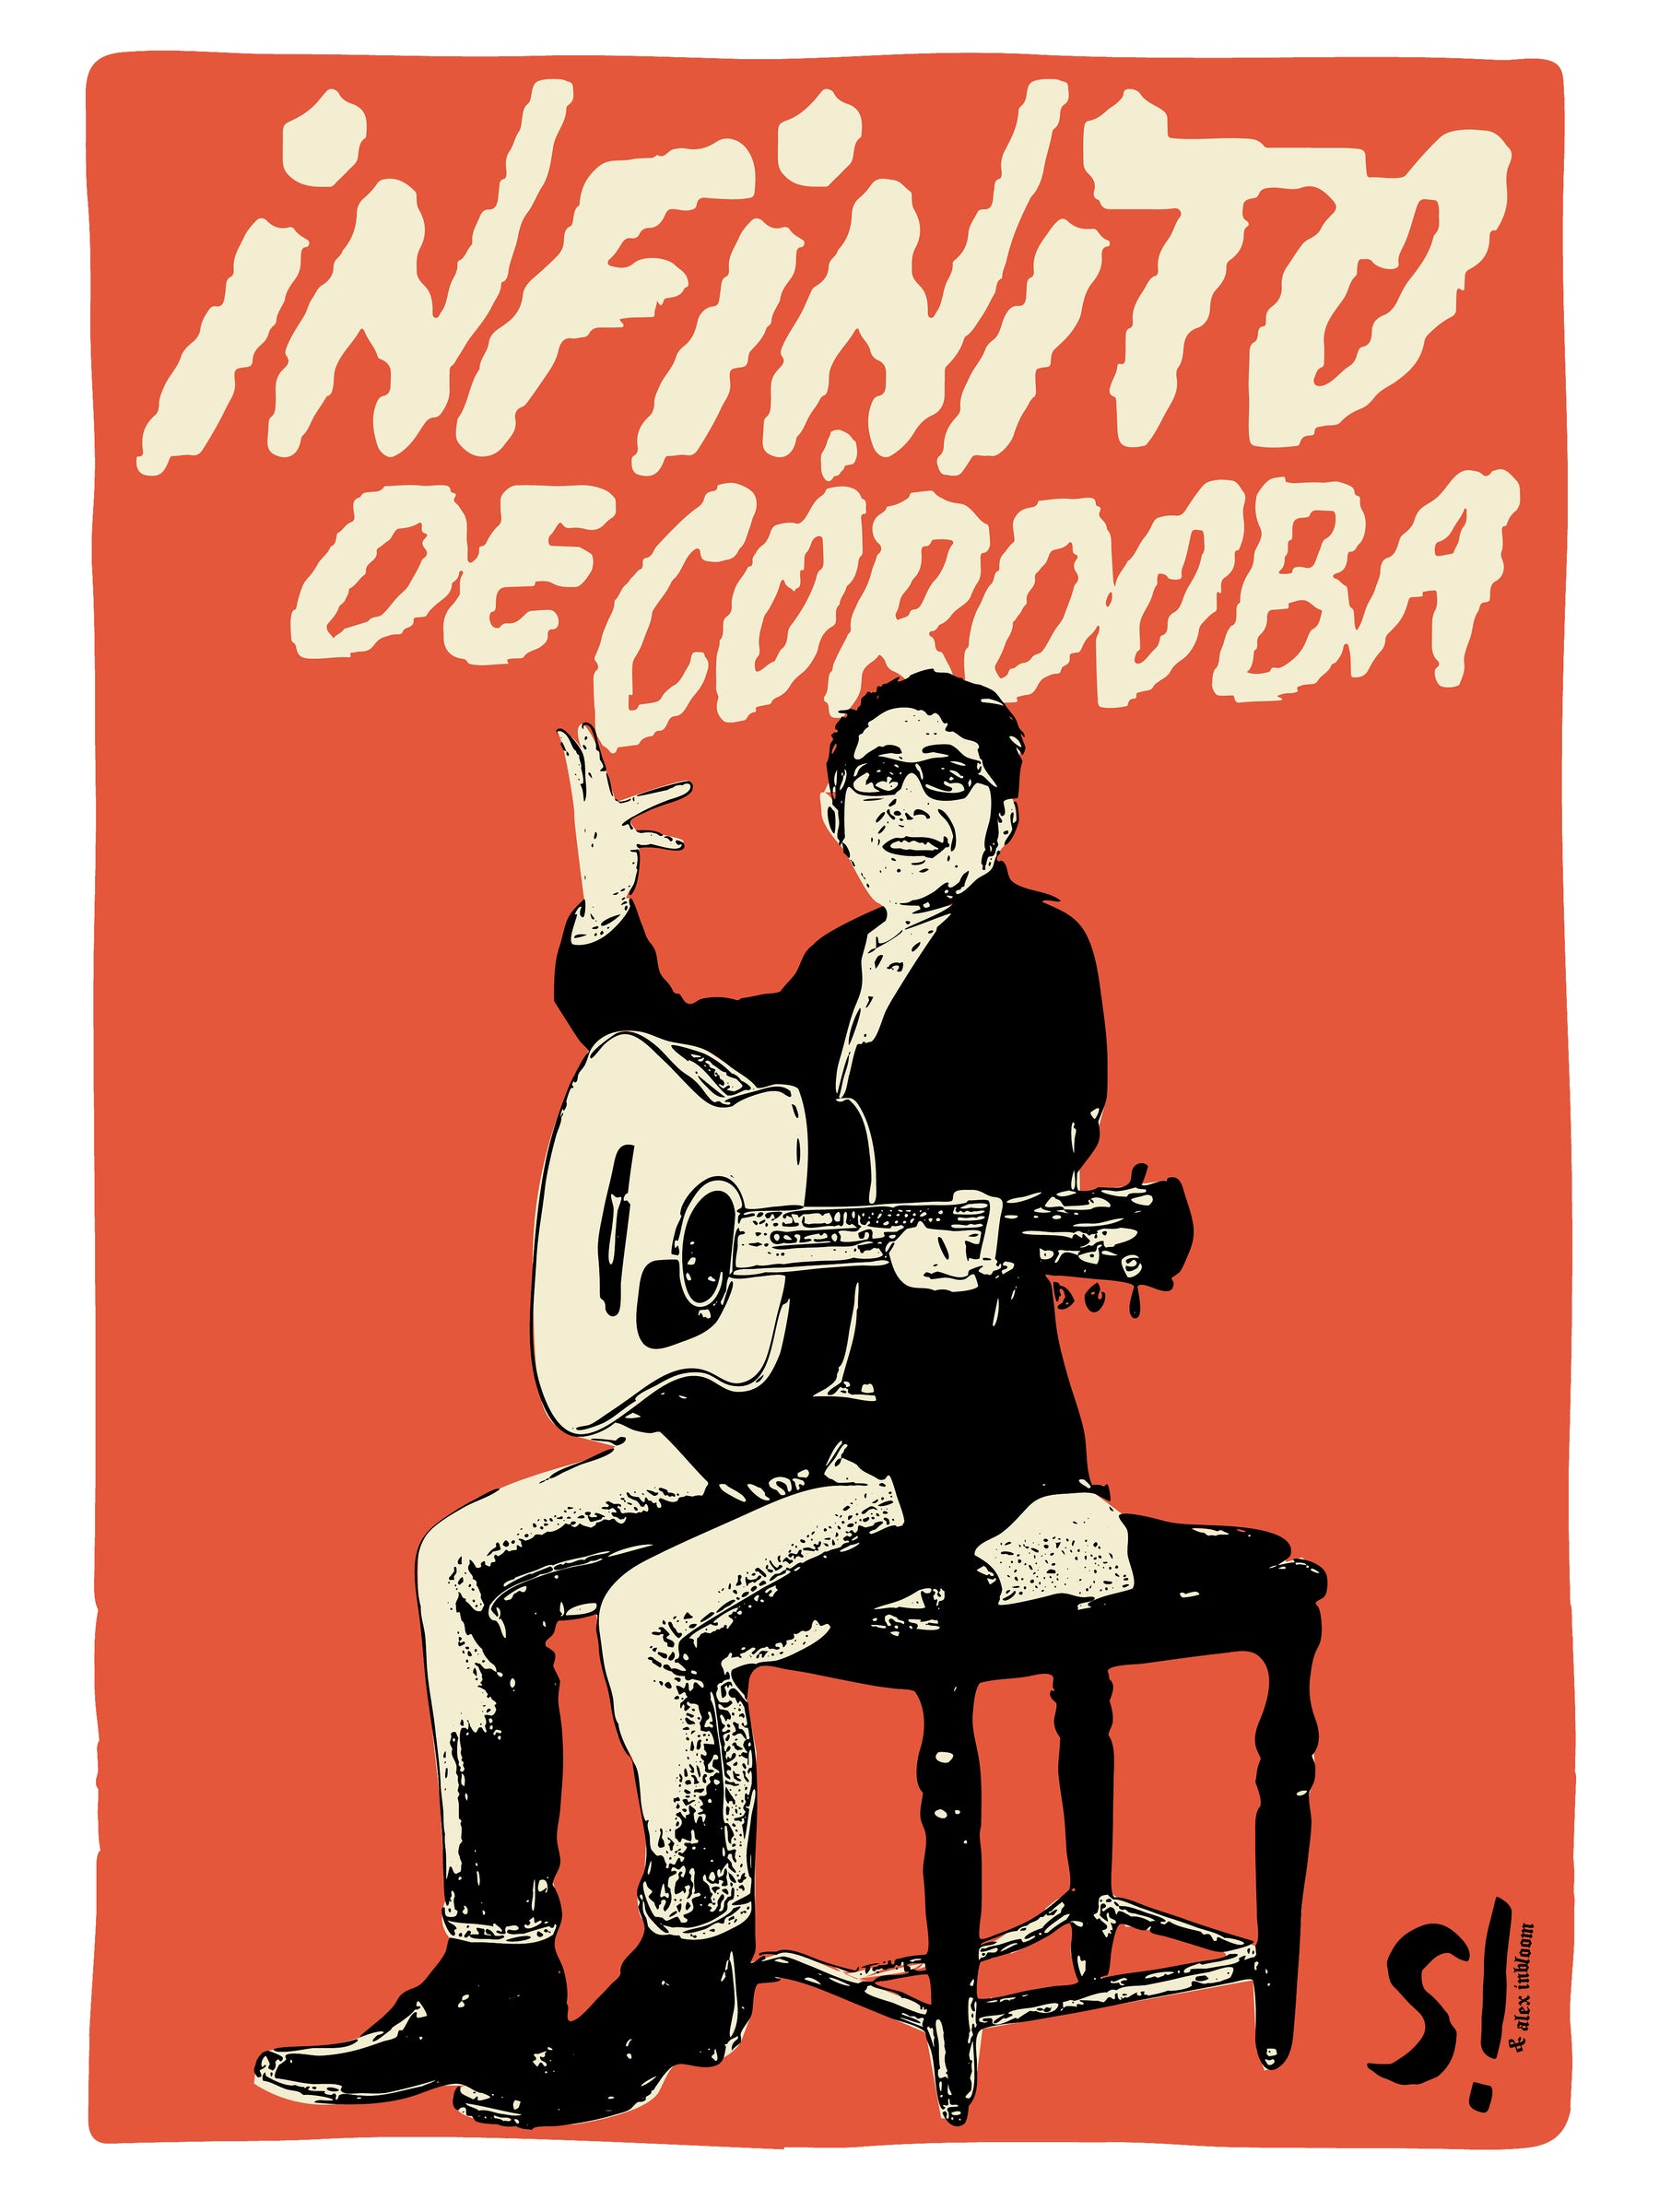 Camiseta "Infinito de Córdoba" x InBloom